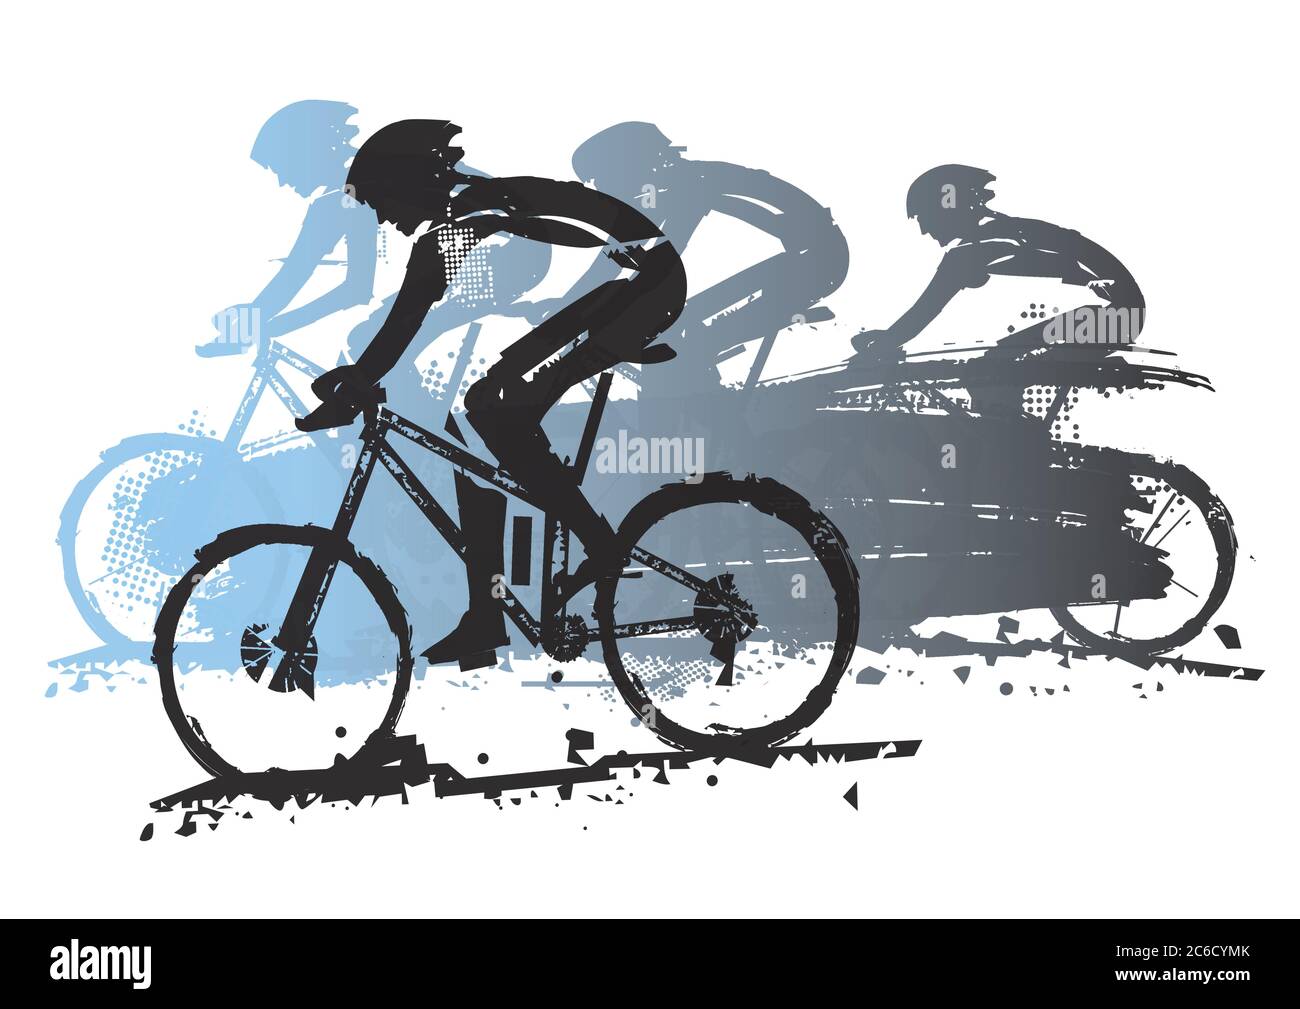 Mountain bike, competizione, viaggio. Grunge espressivo stilizzato illustrazione di quattro ciclisti su mountain bike. Vettore disponibile. Illustrazione Vettoriale